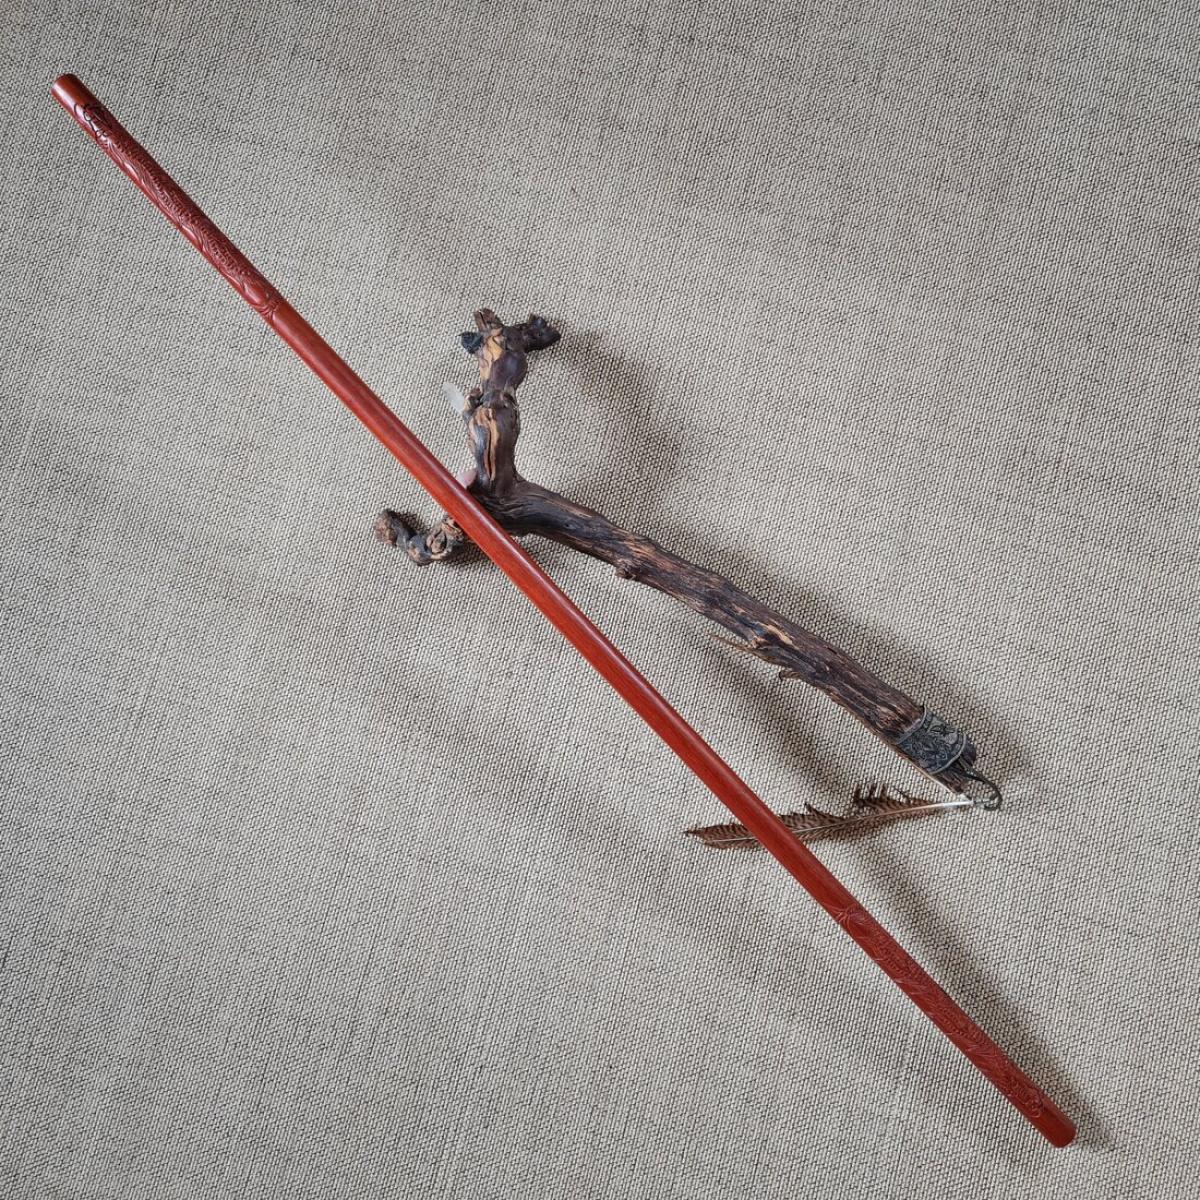 Jo stick made of Balayong with dragon carving - length 128 cm ➤ www.bokken-shop.de. Suitable for Aikido, IaiAdo, Jo-Jutsu, Jodo. Your Budo dealer!